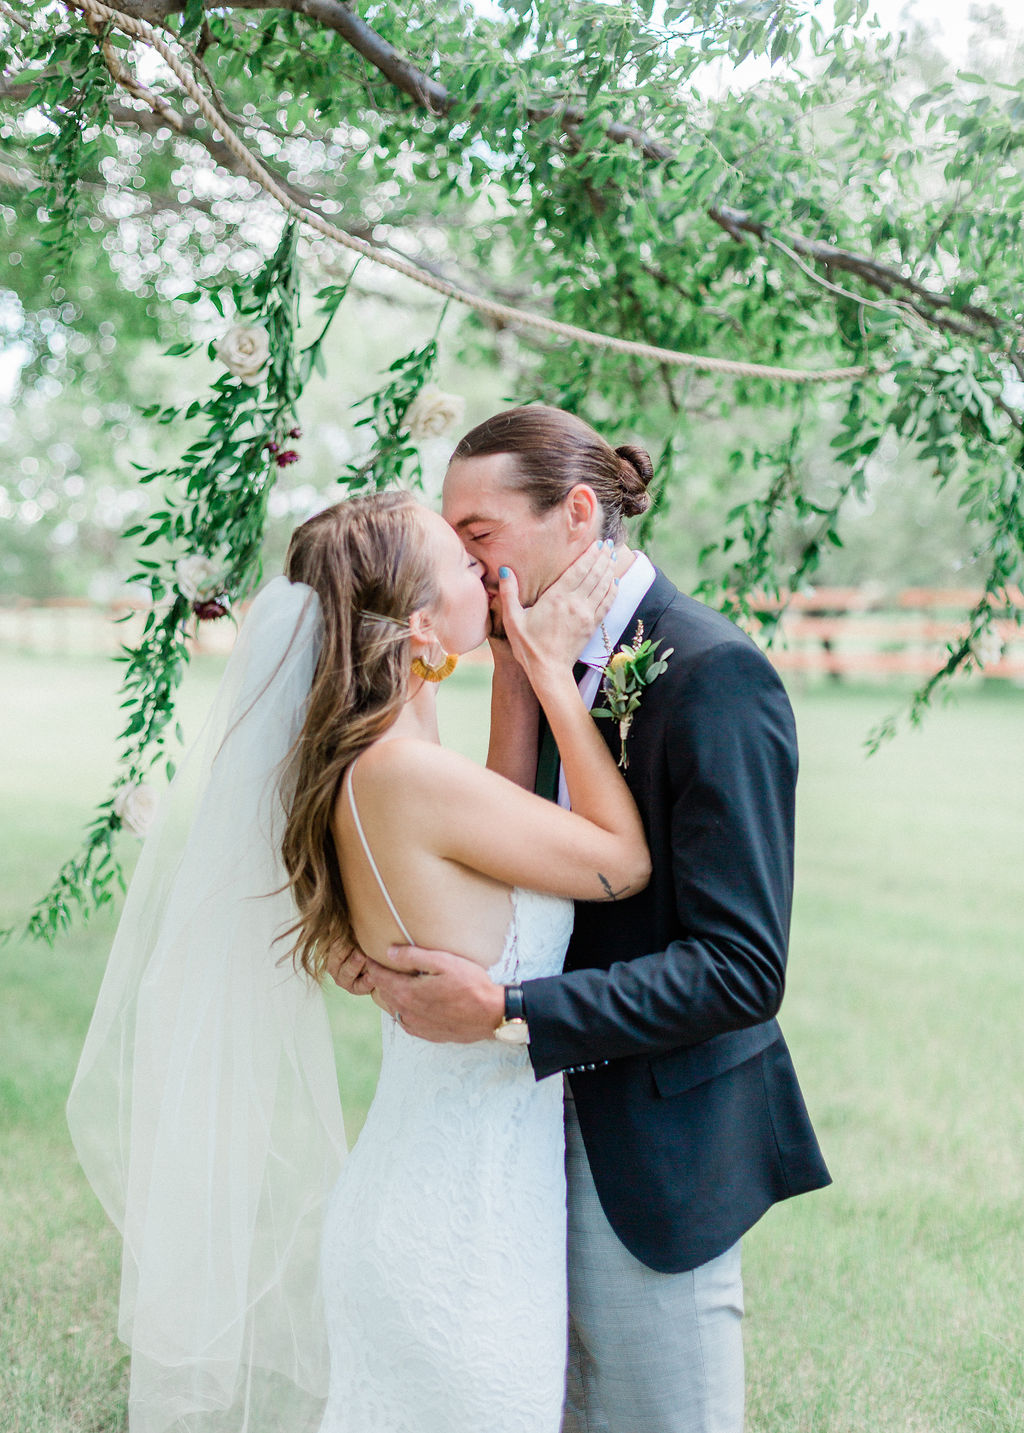 Intimate Wild Flower Wedding - outdoor wedding, first kiss, grooms attire